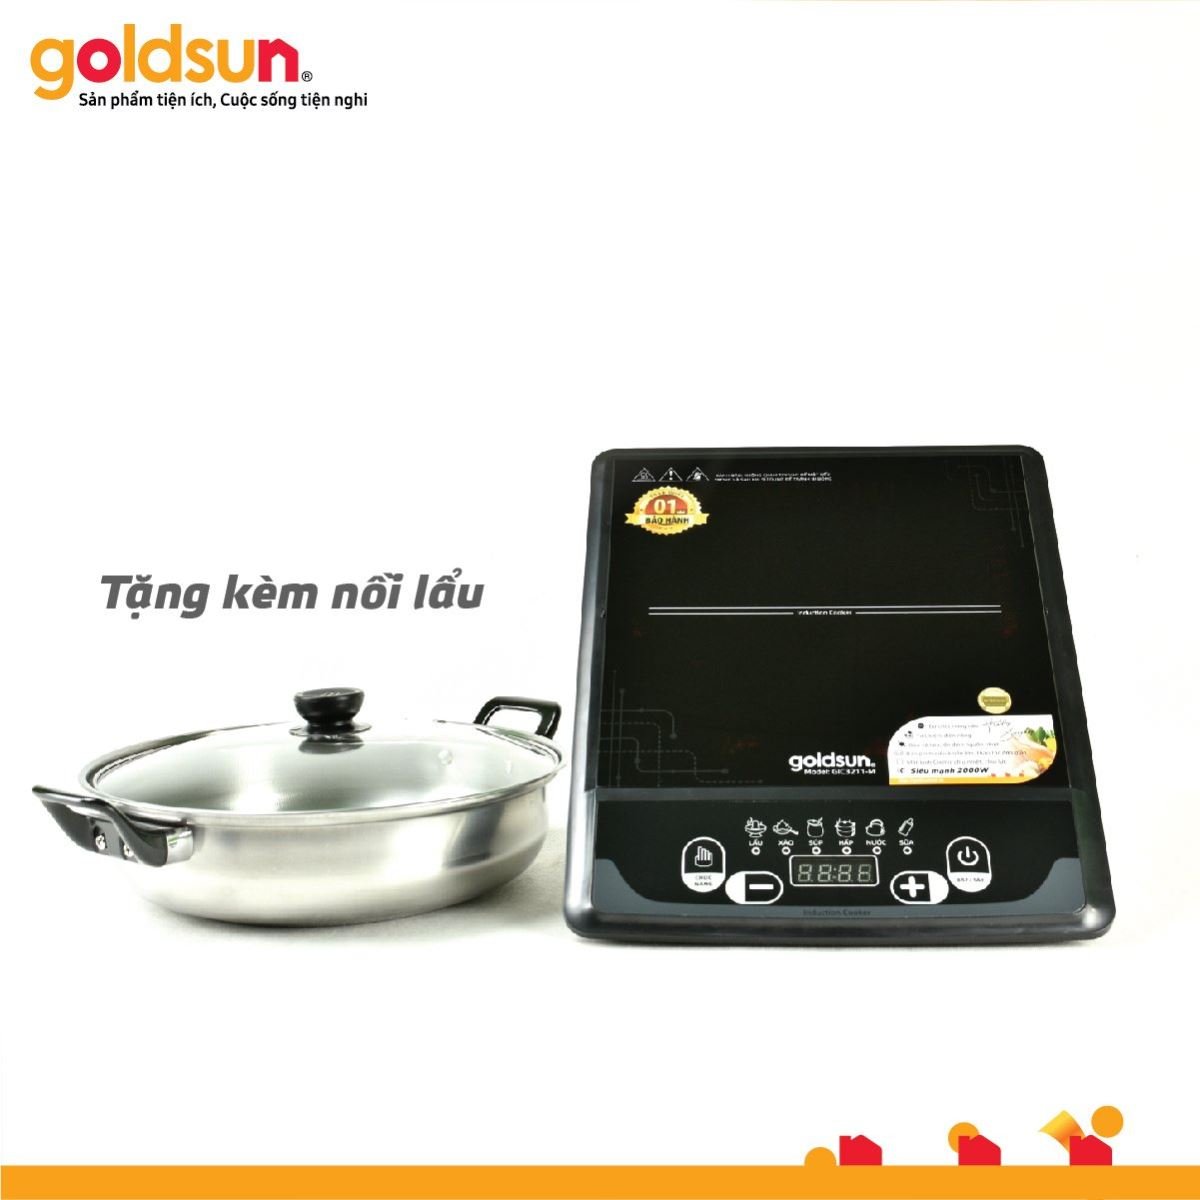 hình ảnh bếp goldsun gic3211-M